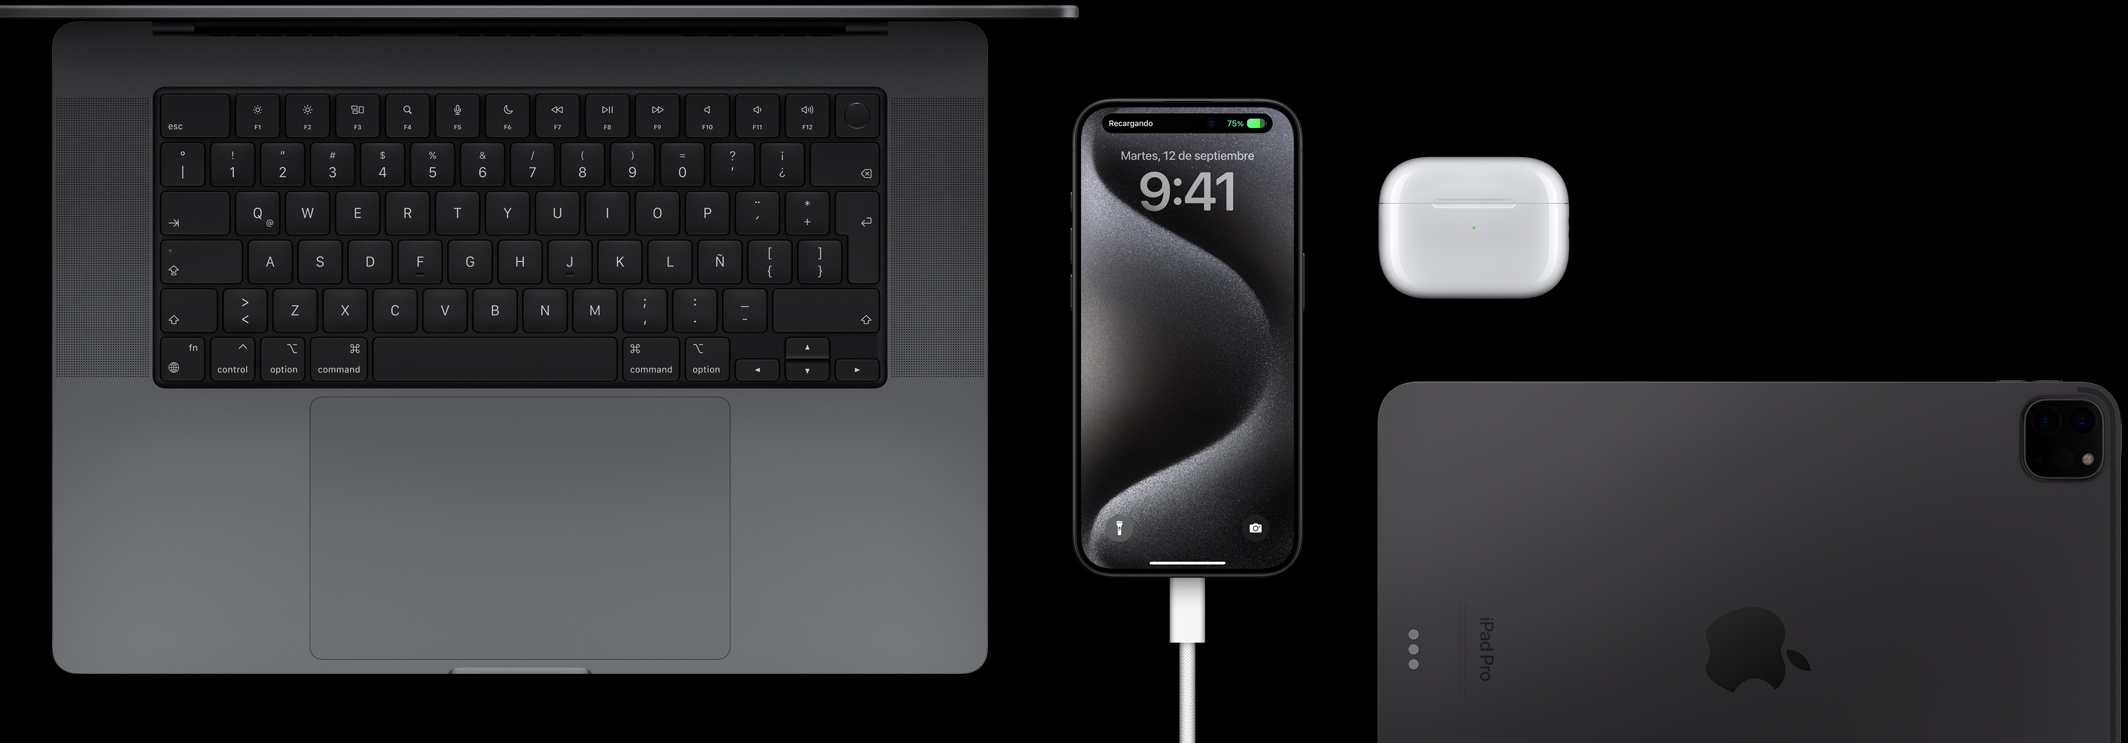 Un iPhone 15 Pro con un cable USB-C conectado, rodeado por una MacBook Pro, unos AirPods Pro y un iPad